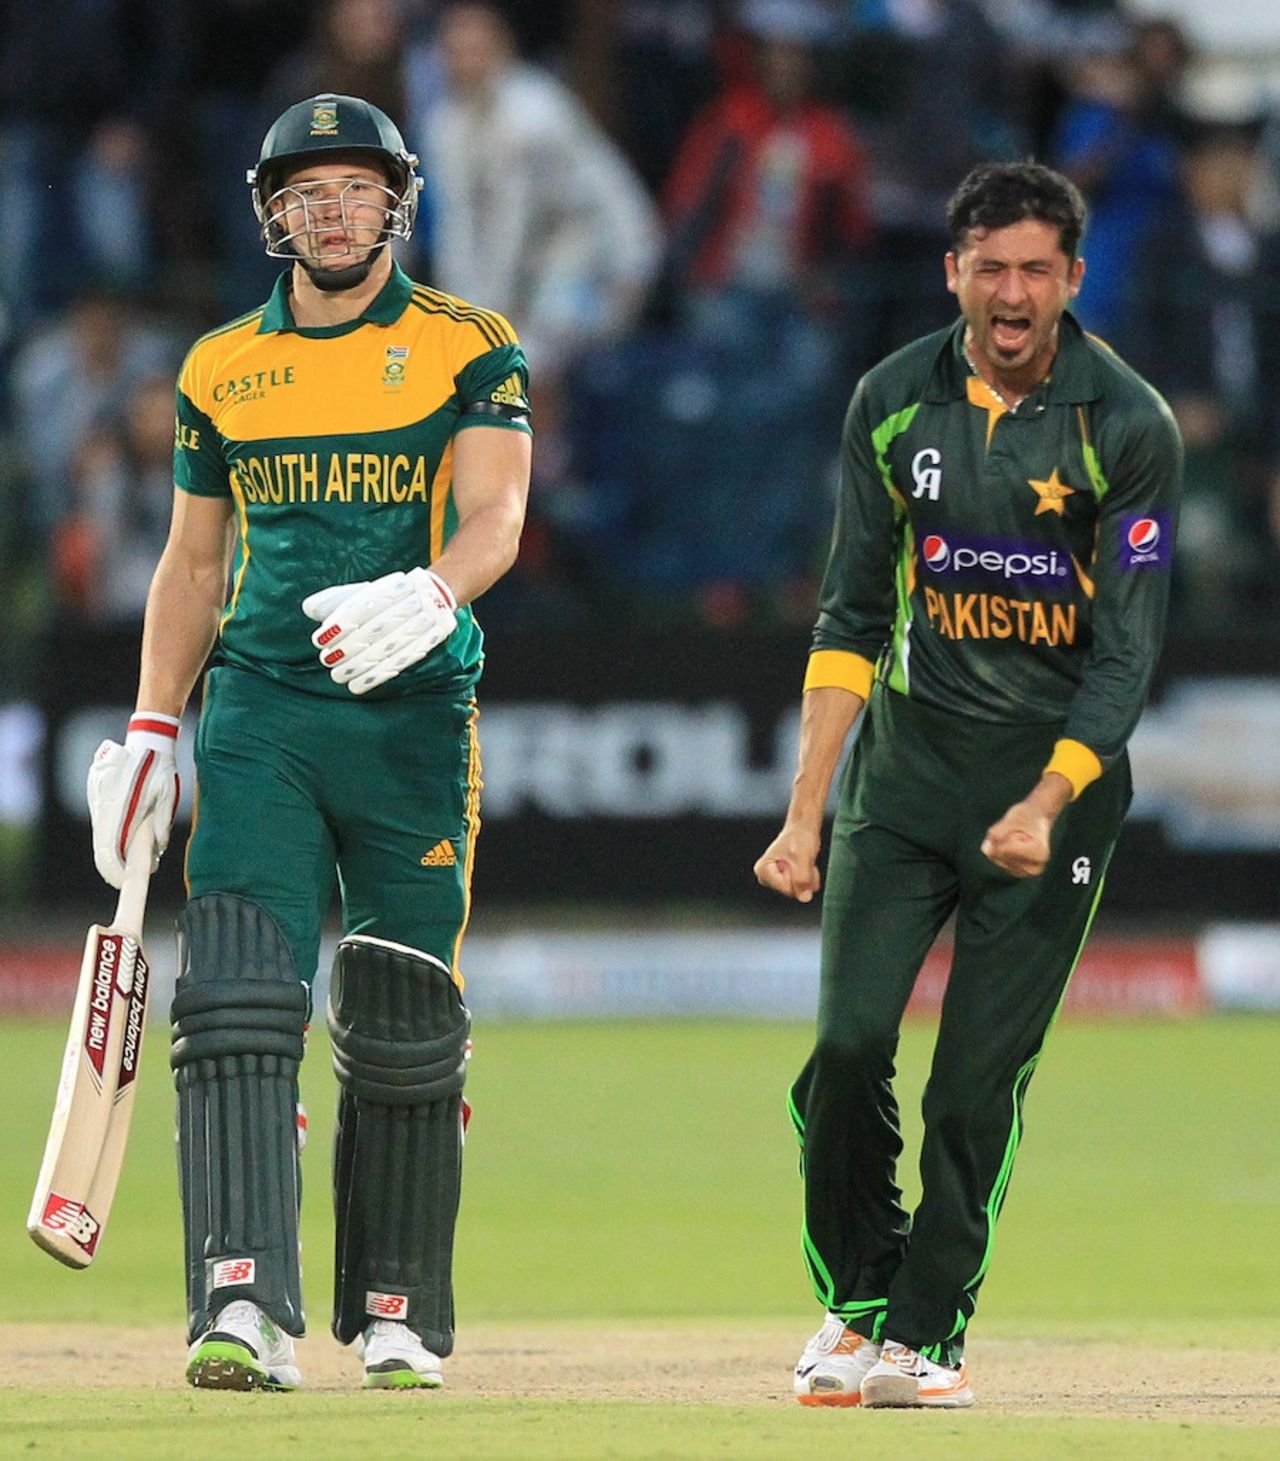 Junaid Khan rejoices after Pakistan's win, South Africa v Pakistan, 2nd ODI, Port Elizabeth, November 27, 2013